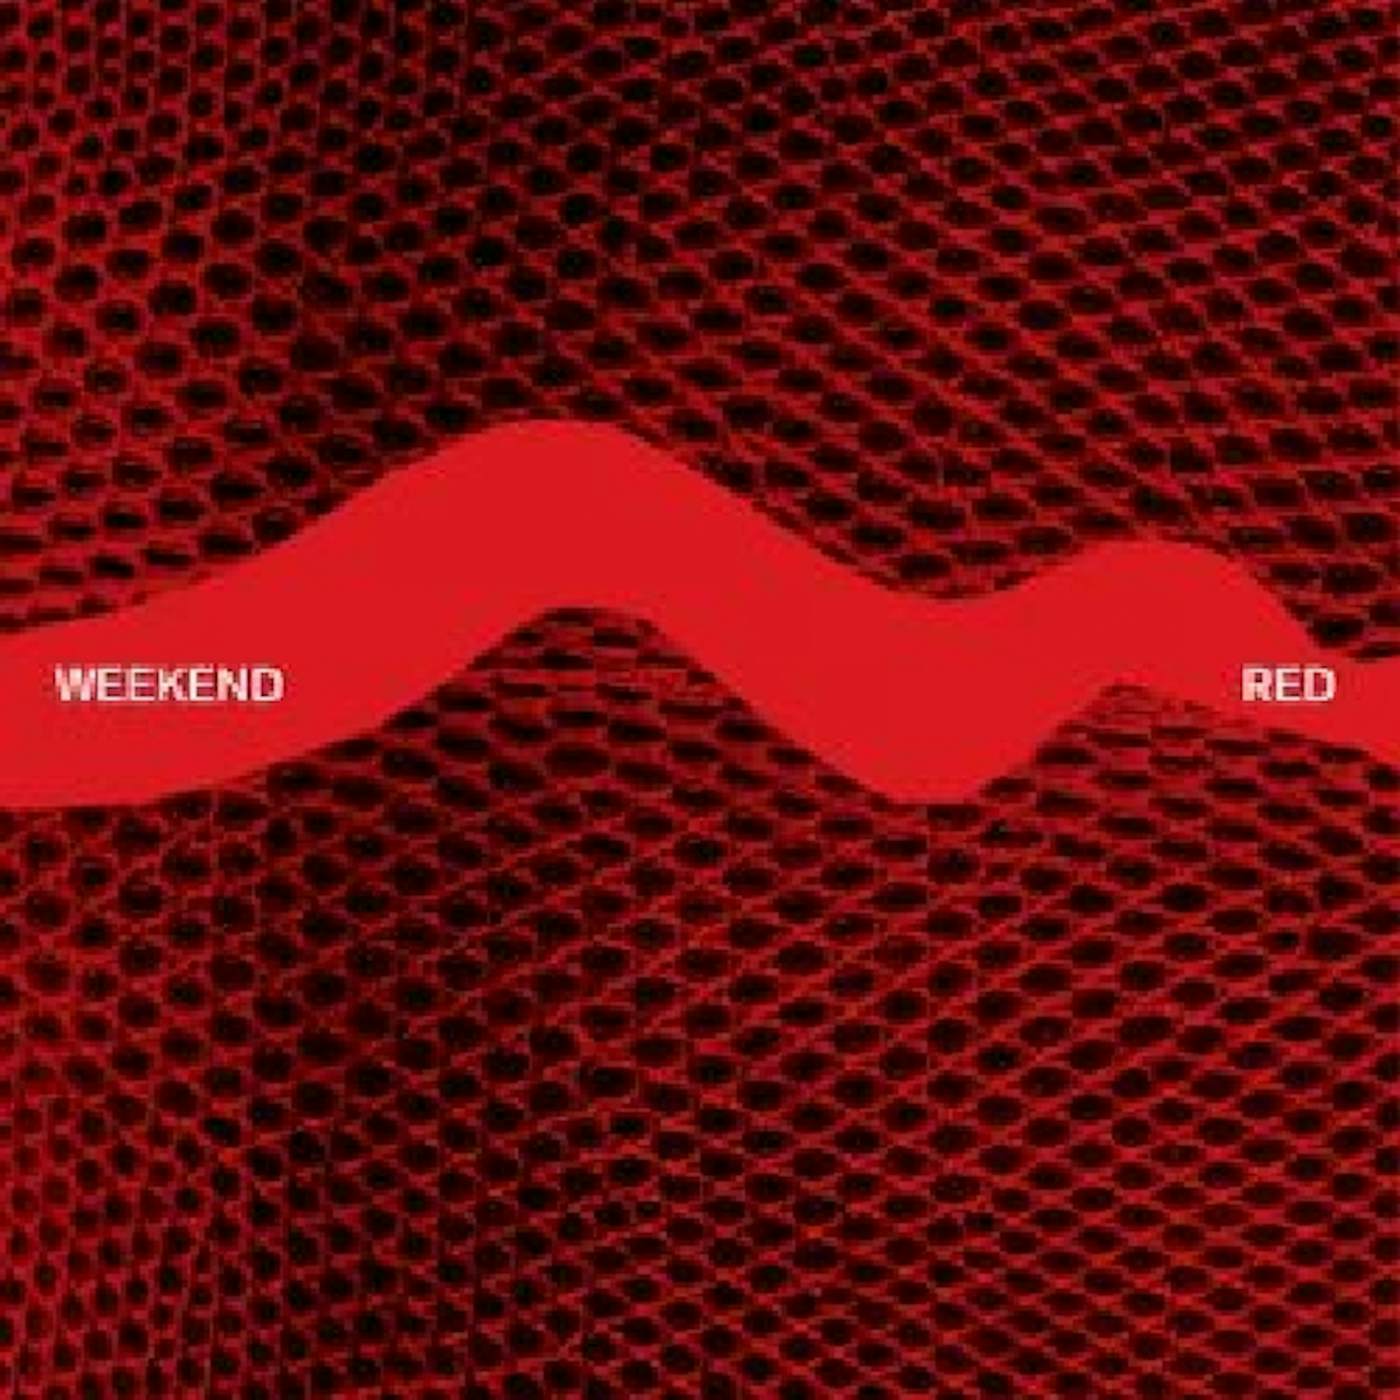 Weekend RED CD